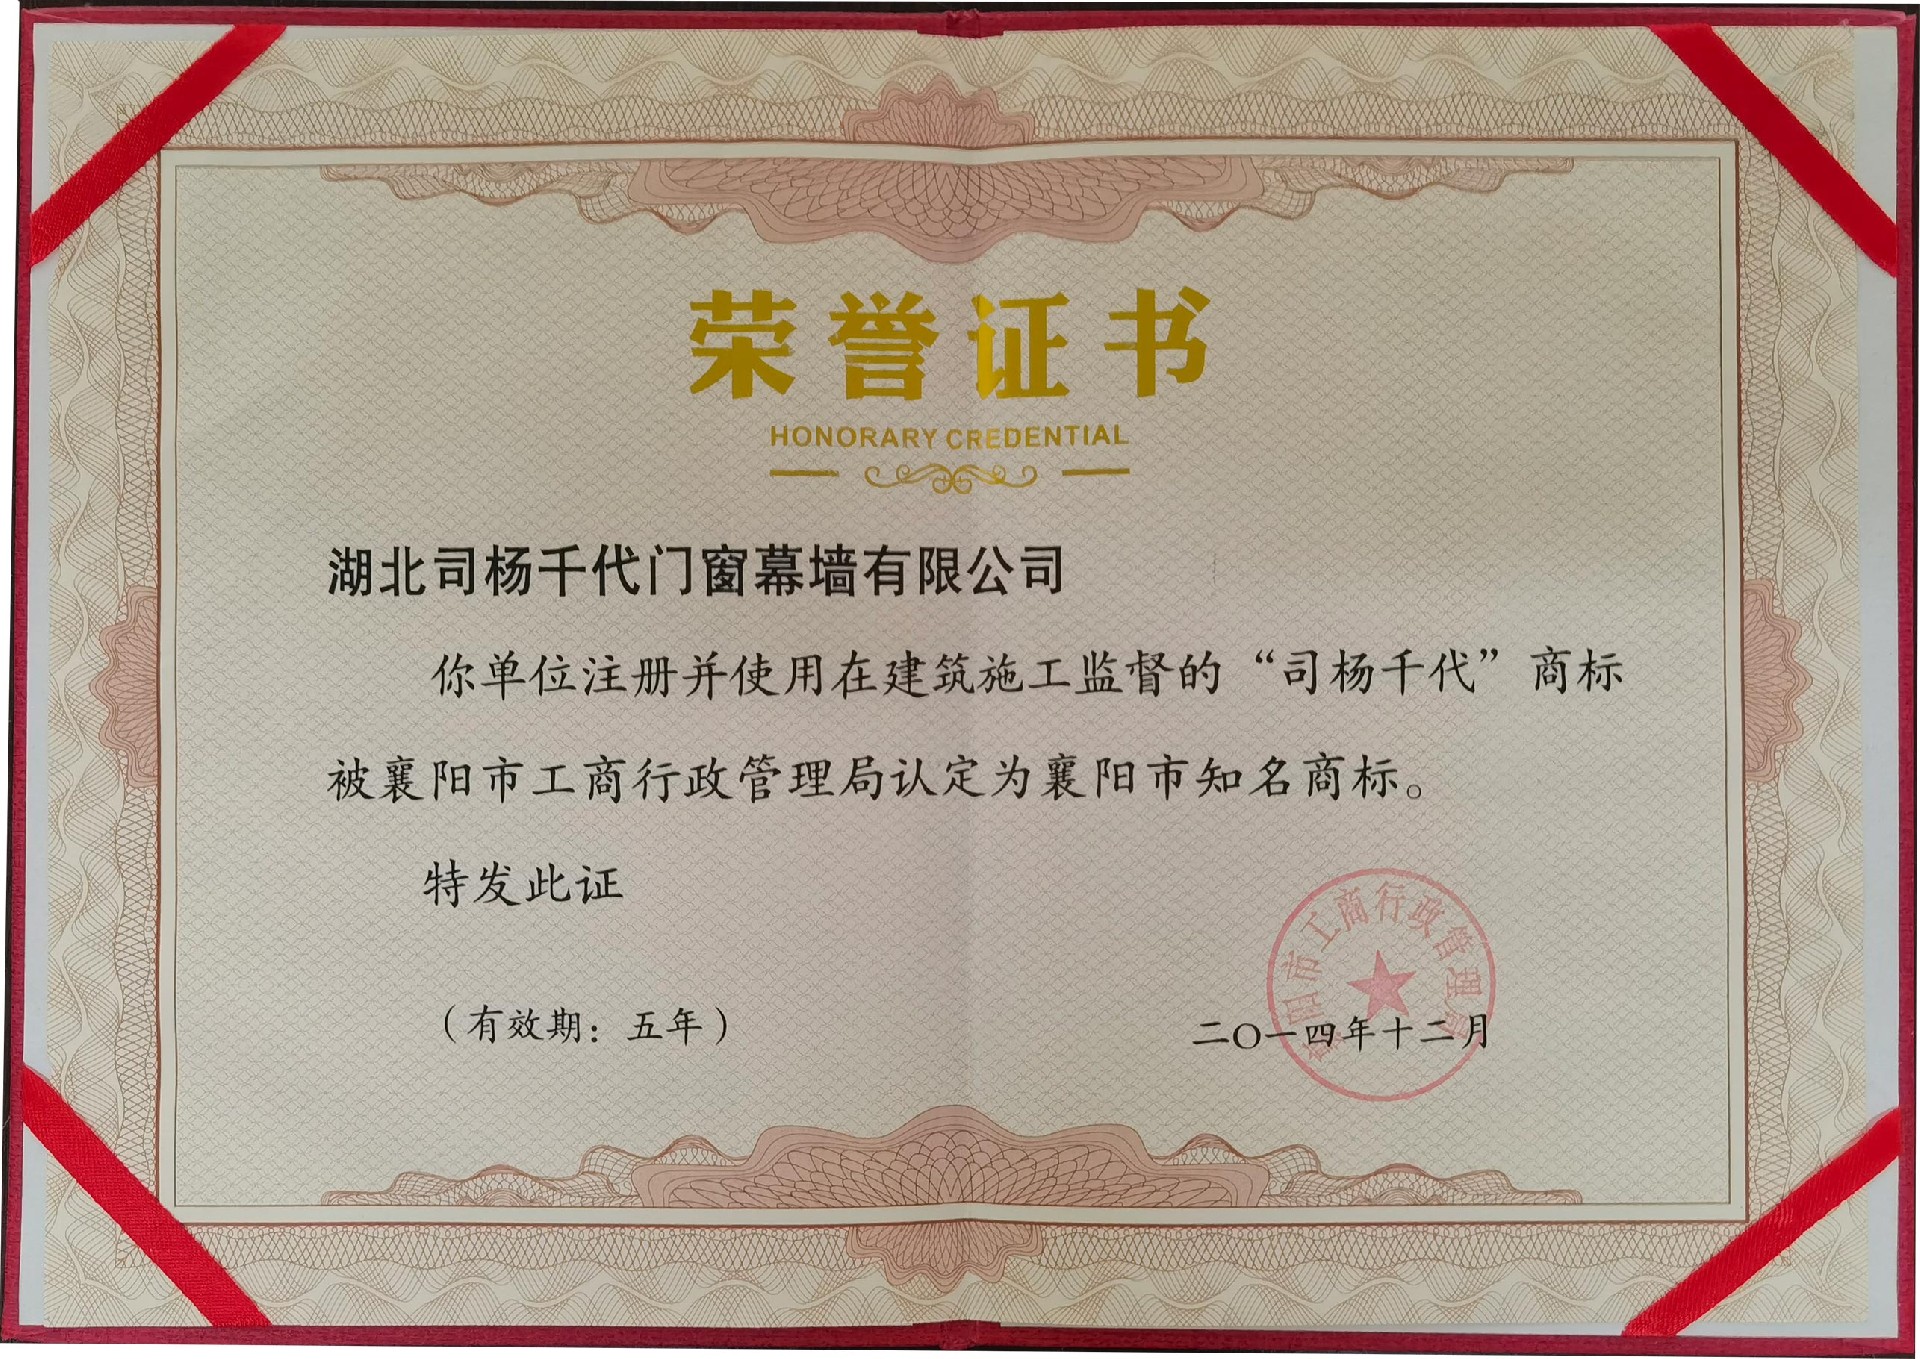 2014年12月使用在建筑施工監督的司楊千代商標認定為襄陽知名商標。